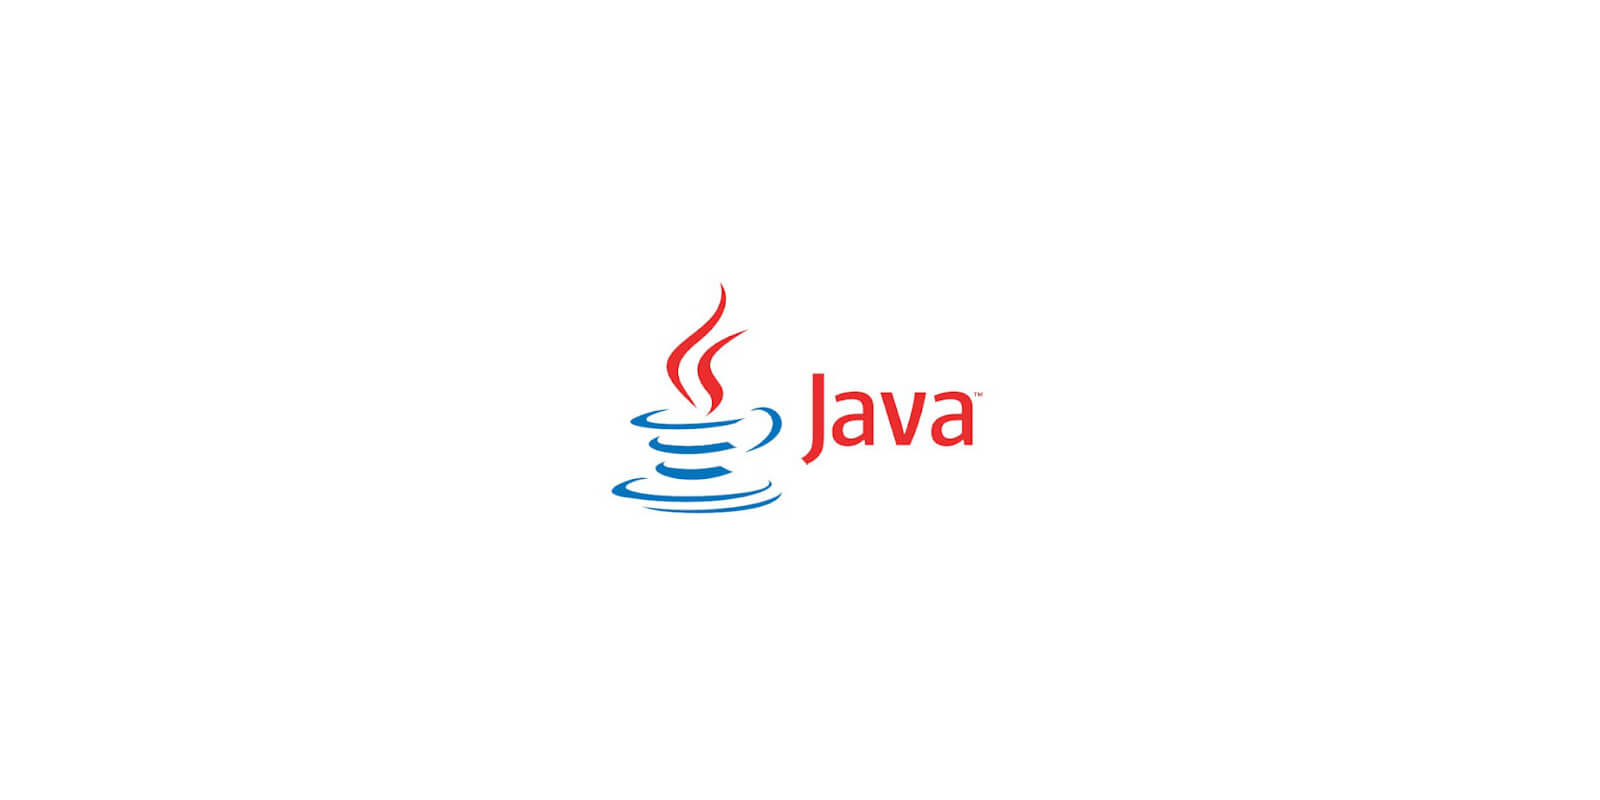 Install Java JRE on Linux Ubuntu